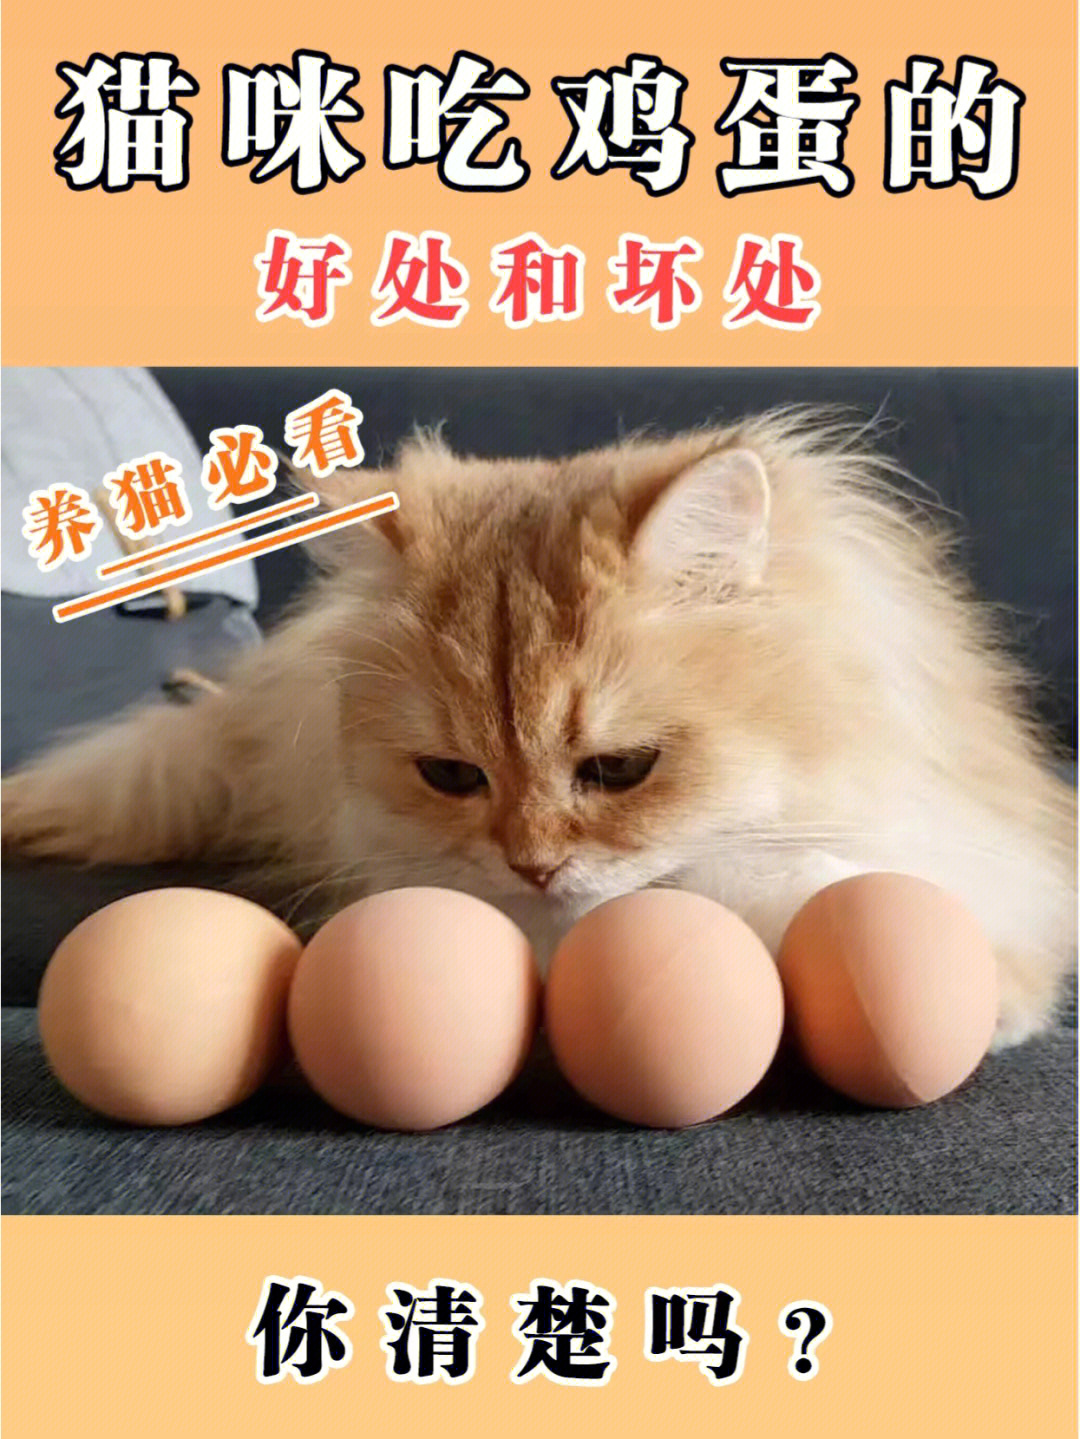 猫咪吃鸡蛋的好处和坏处,你清楚吗?